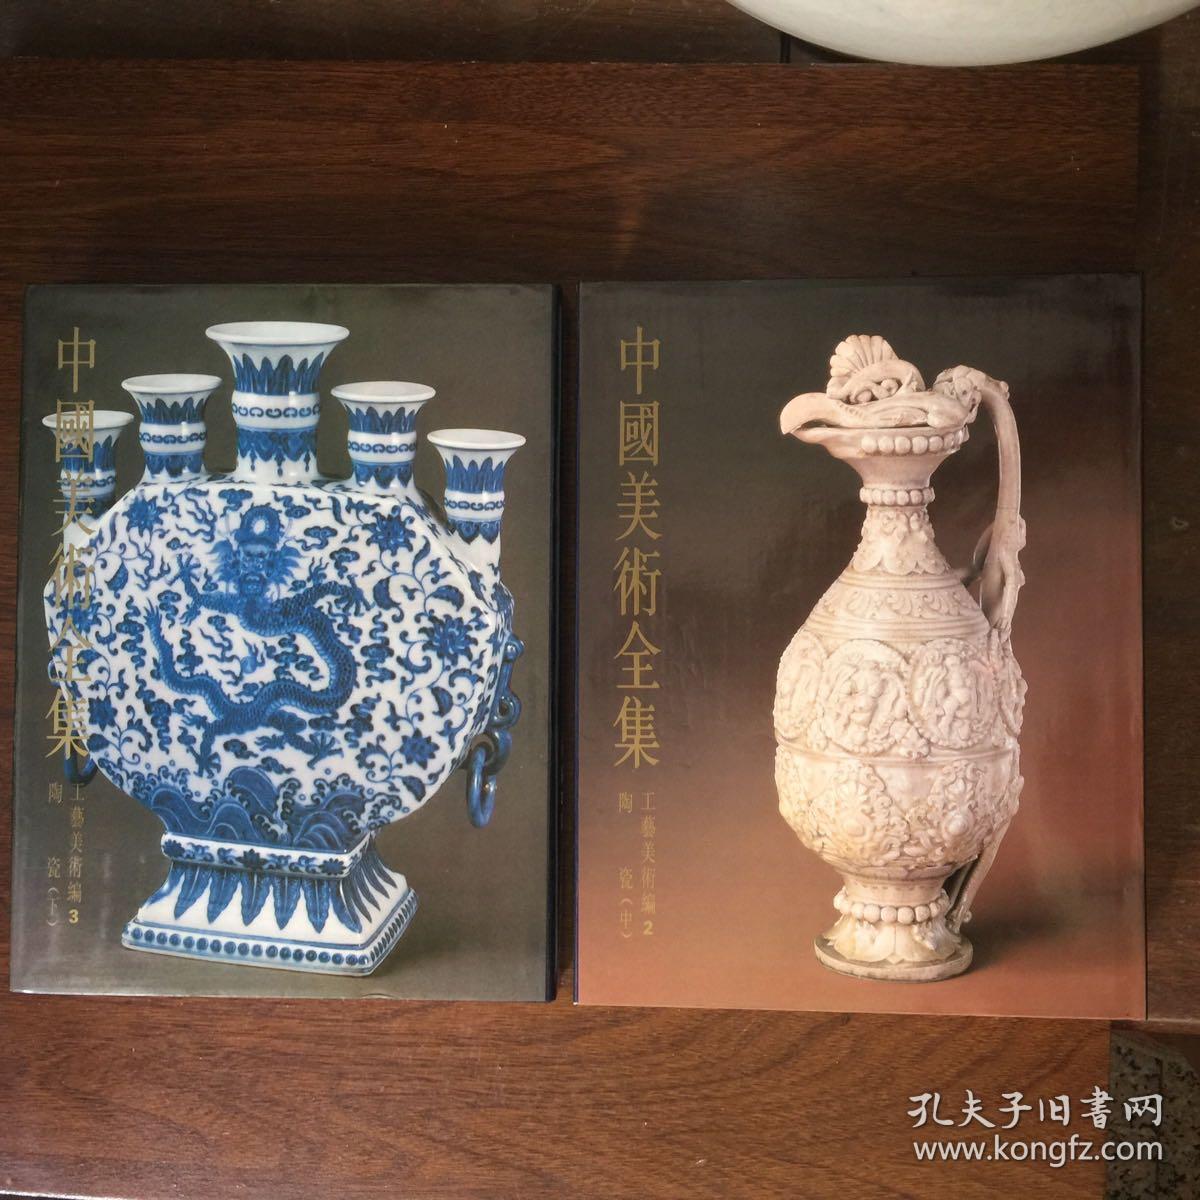 中国美术全集：工艺美术编2 陶瓷（中）、工艺美术编3 陶瓷（下） 二册合售